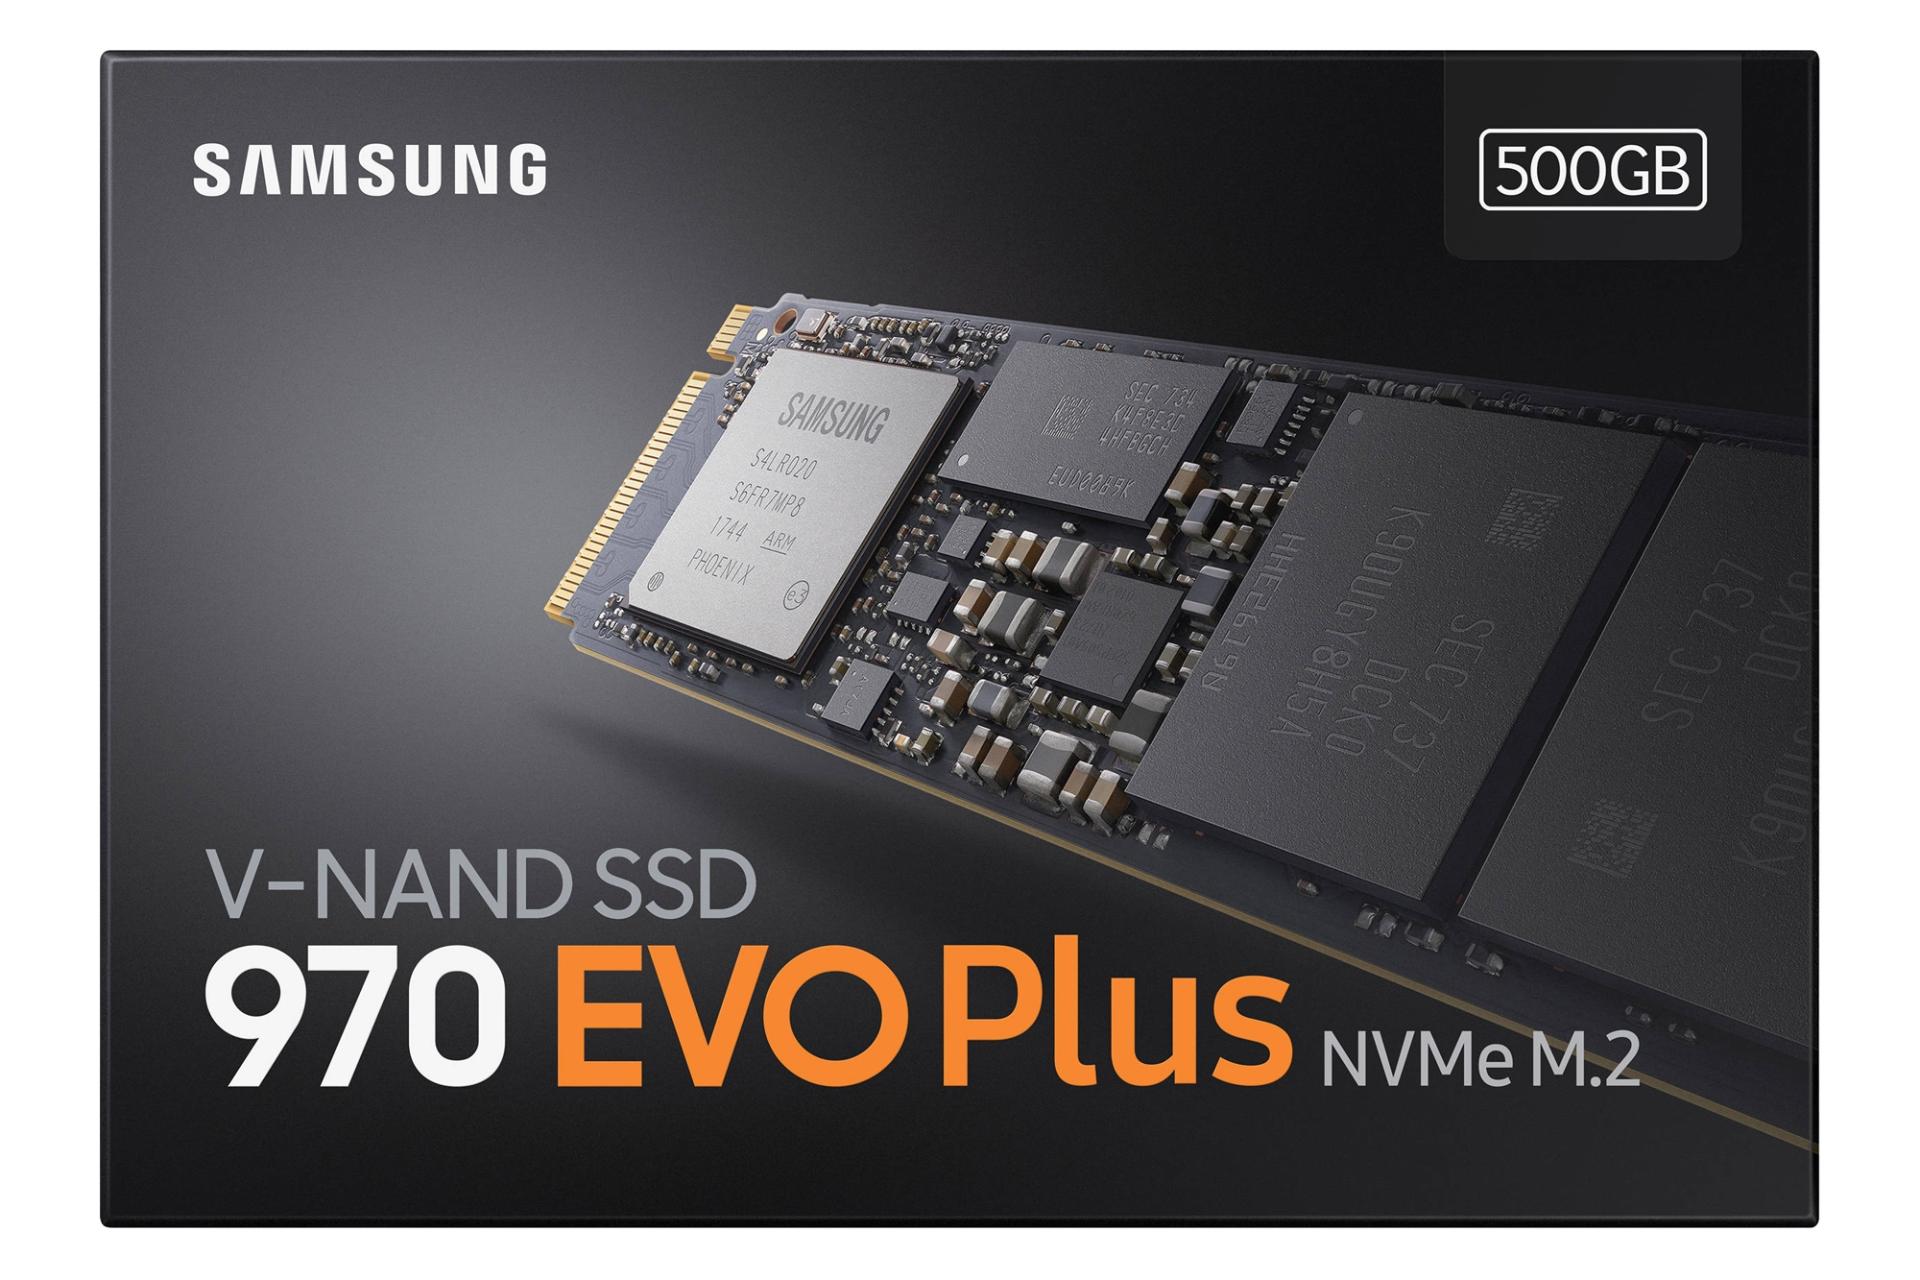 مرجع متخصصين ايران جعبه SSD سامسونگ Samsung 970 EVO Plus NVMe M.2 500GB ظرفيت 500 گيگابايت